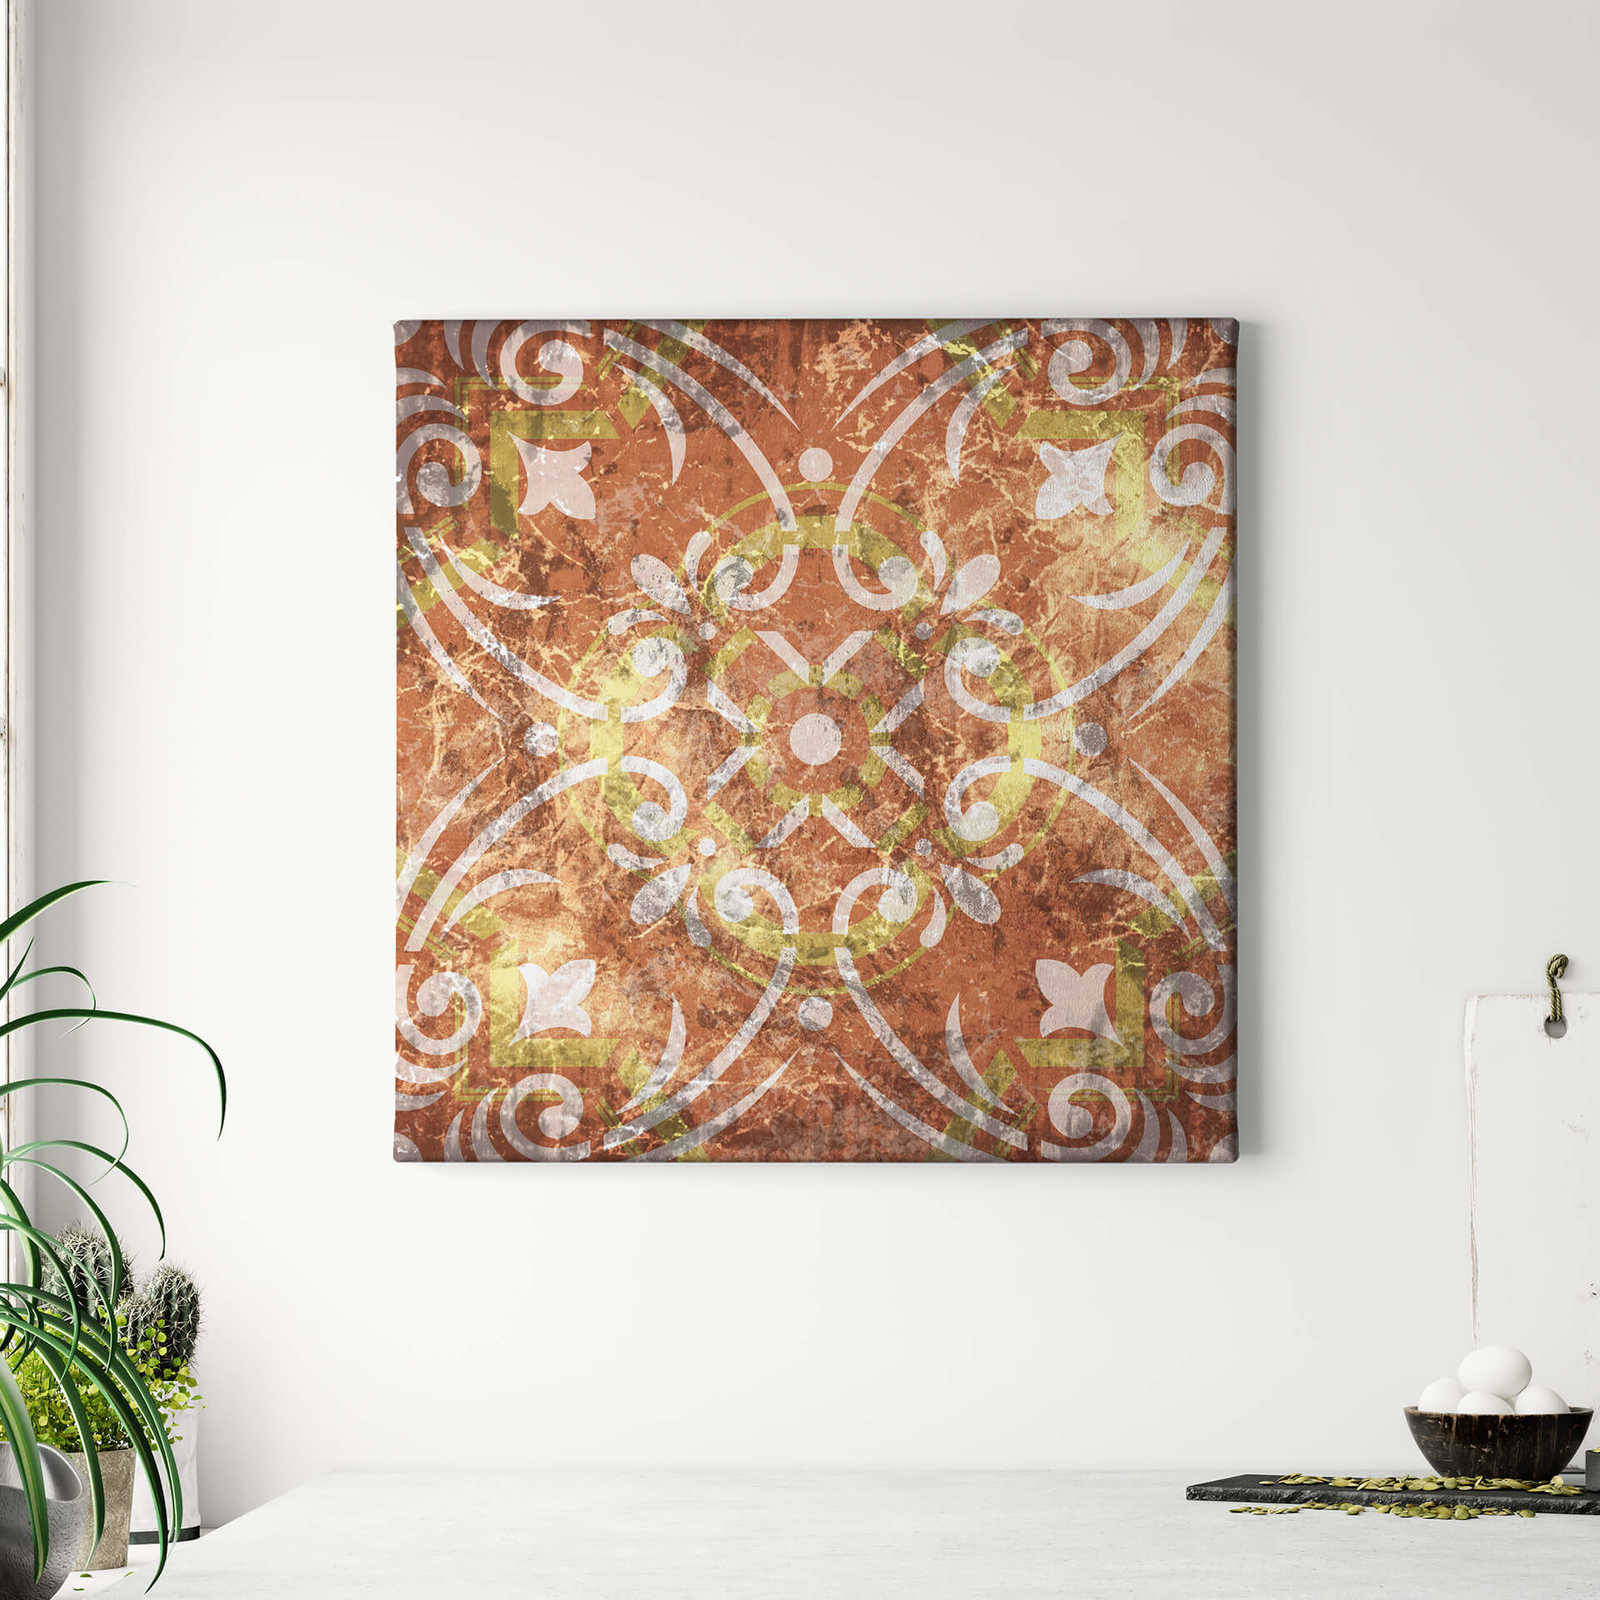             Pittura su tela quadrata con ornamento mediterraneo - 0,50 m x 0,50 m
        